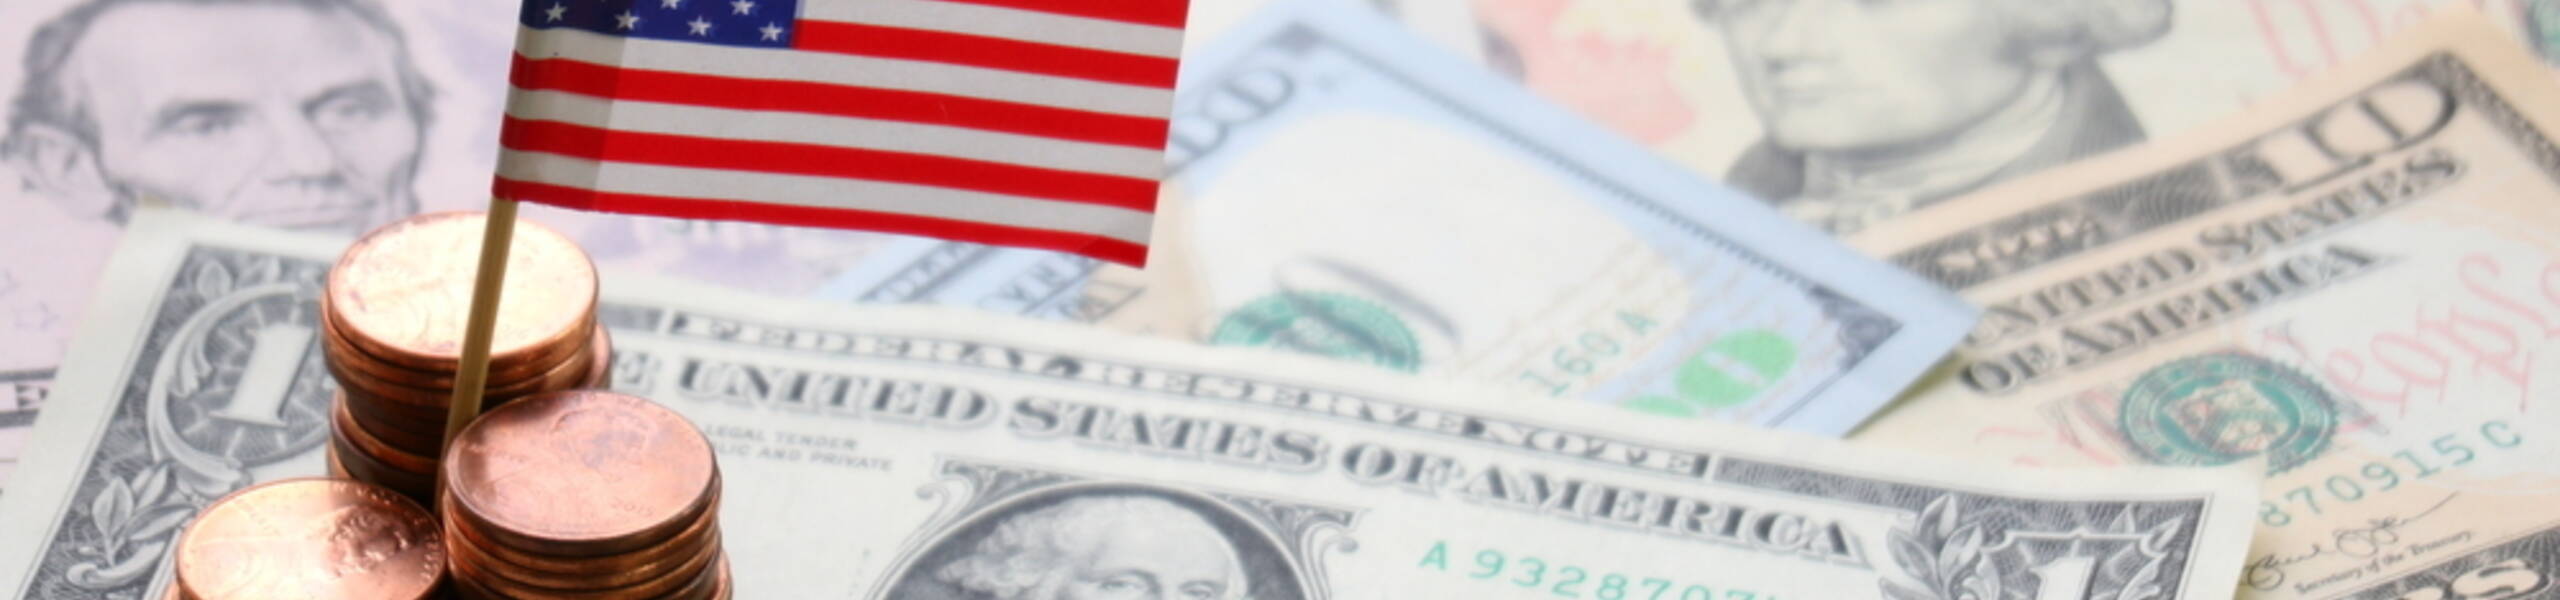 Início de semana lento pode prejudicar o dólar americano